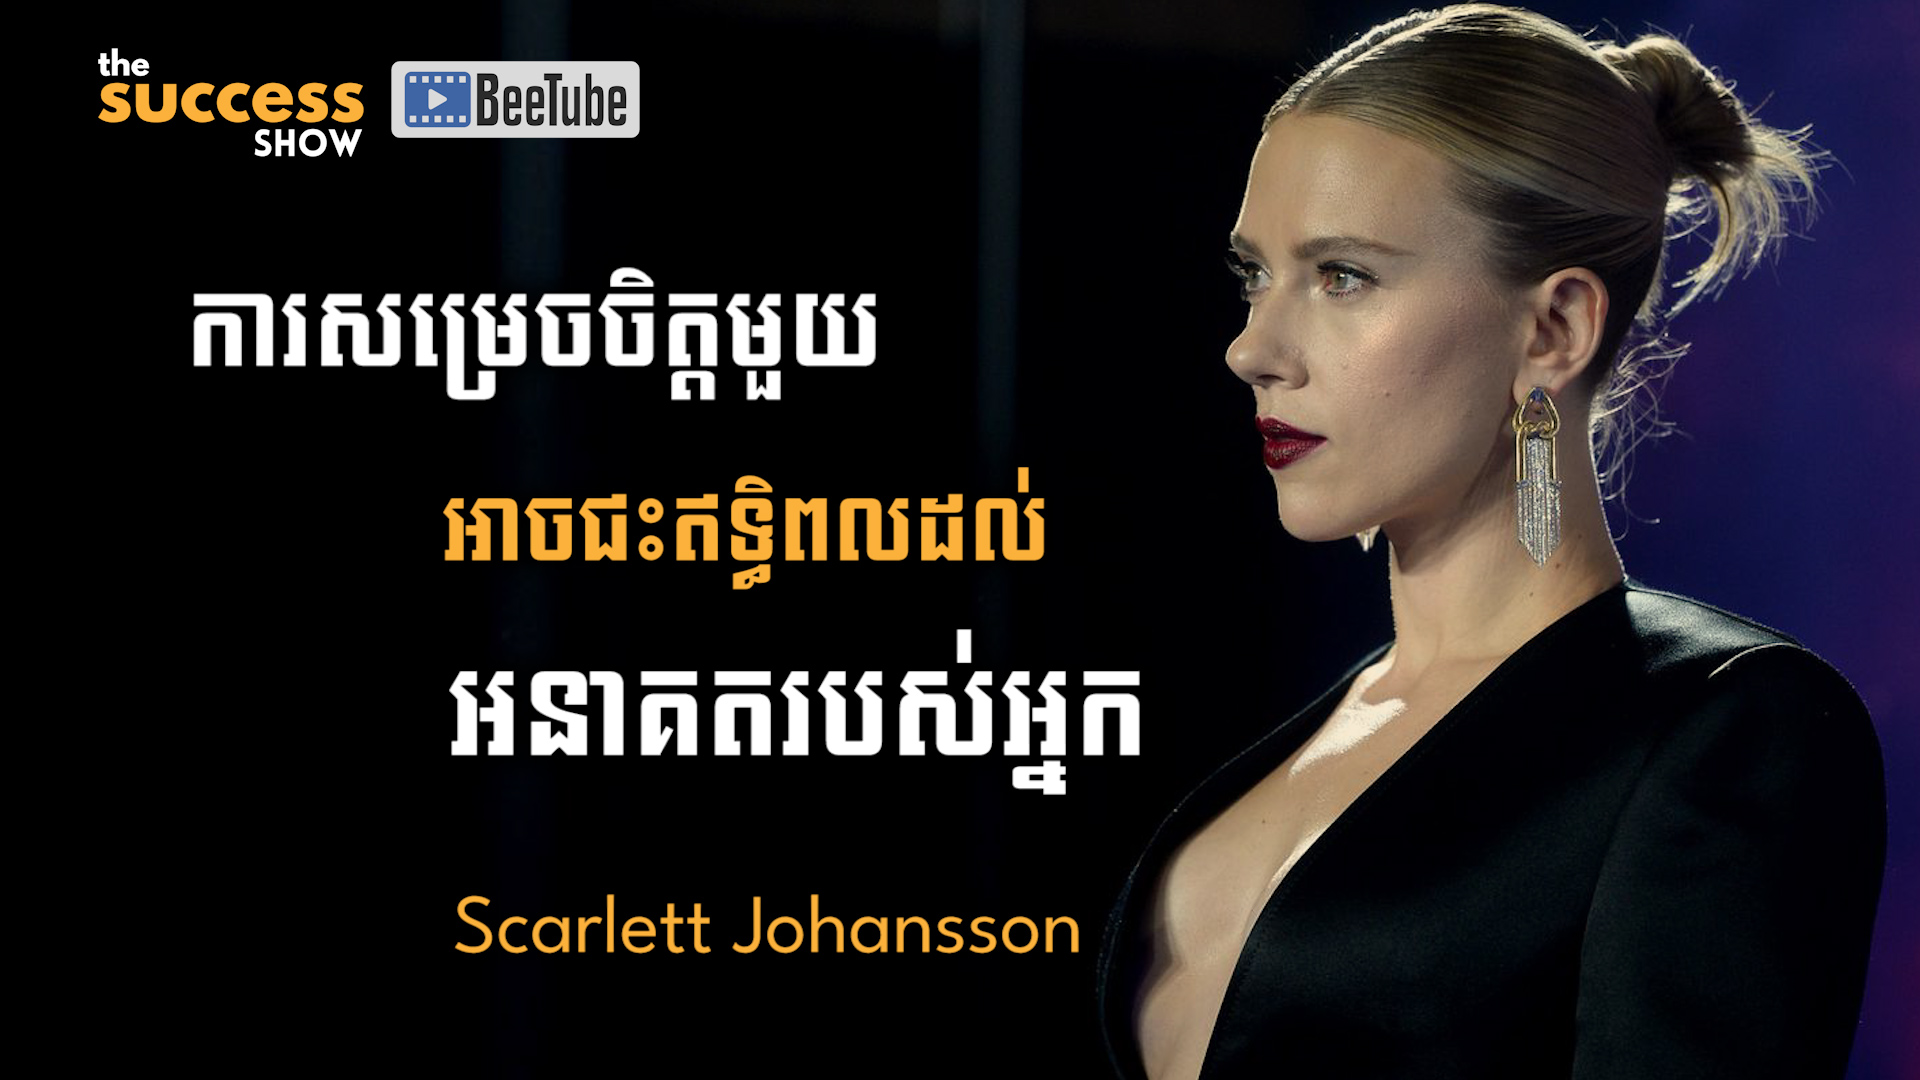 “ការសម្រេចចិត្តមួយ អាចជះឥទ្ធិពលដល់អនាគតរបស់អ្នក” Scarlett Johansson